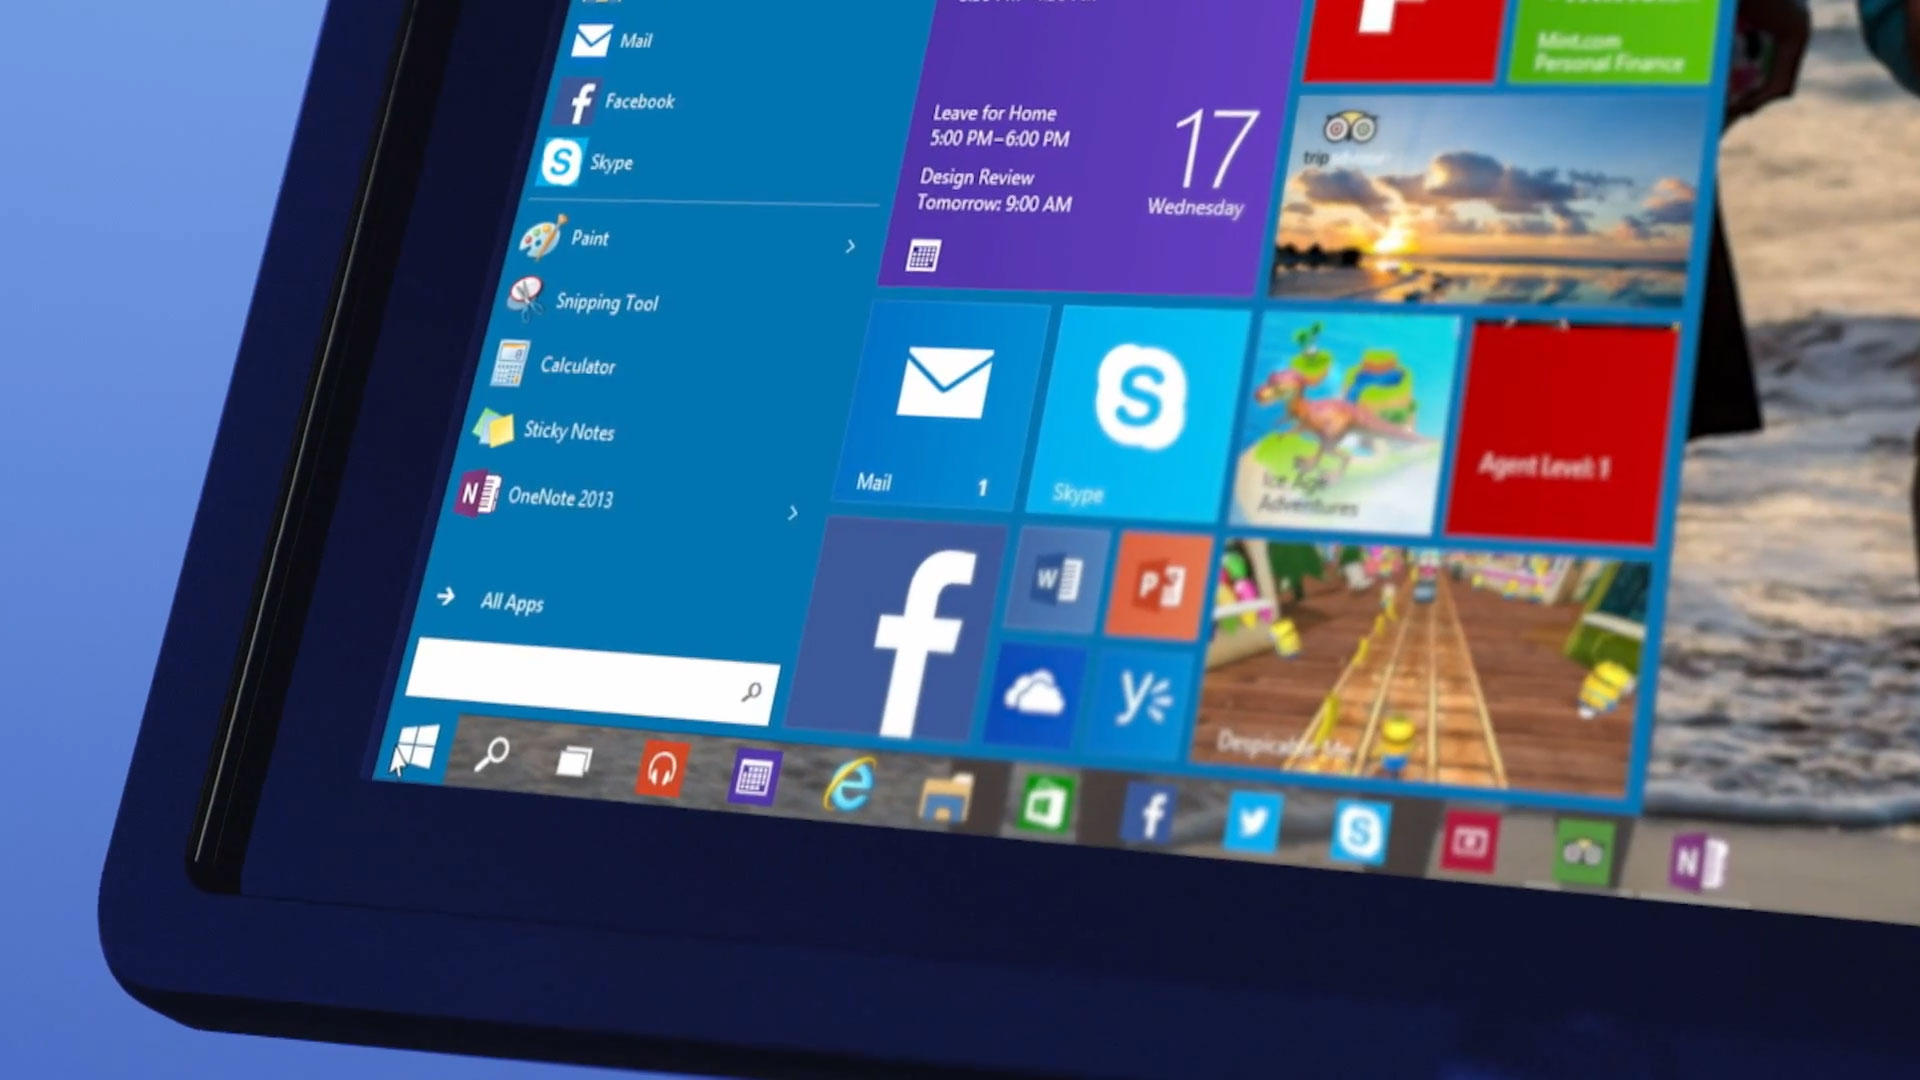 Windows 10 New Start Menu